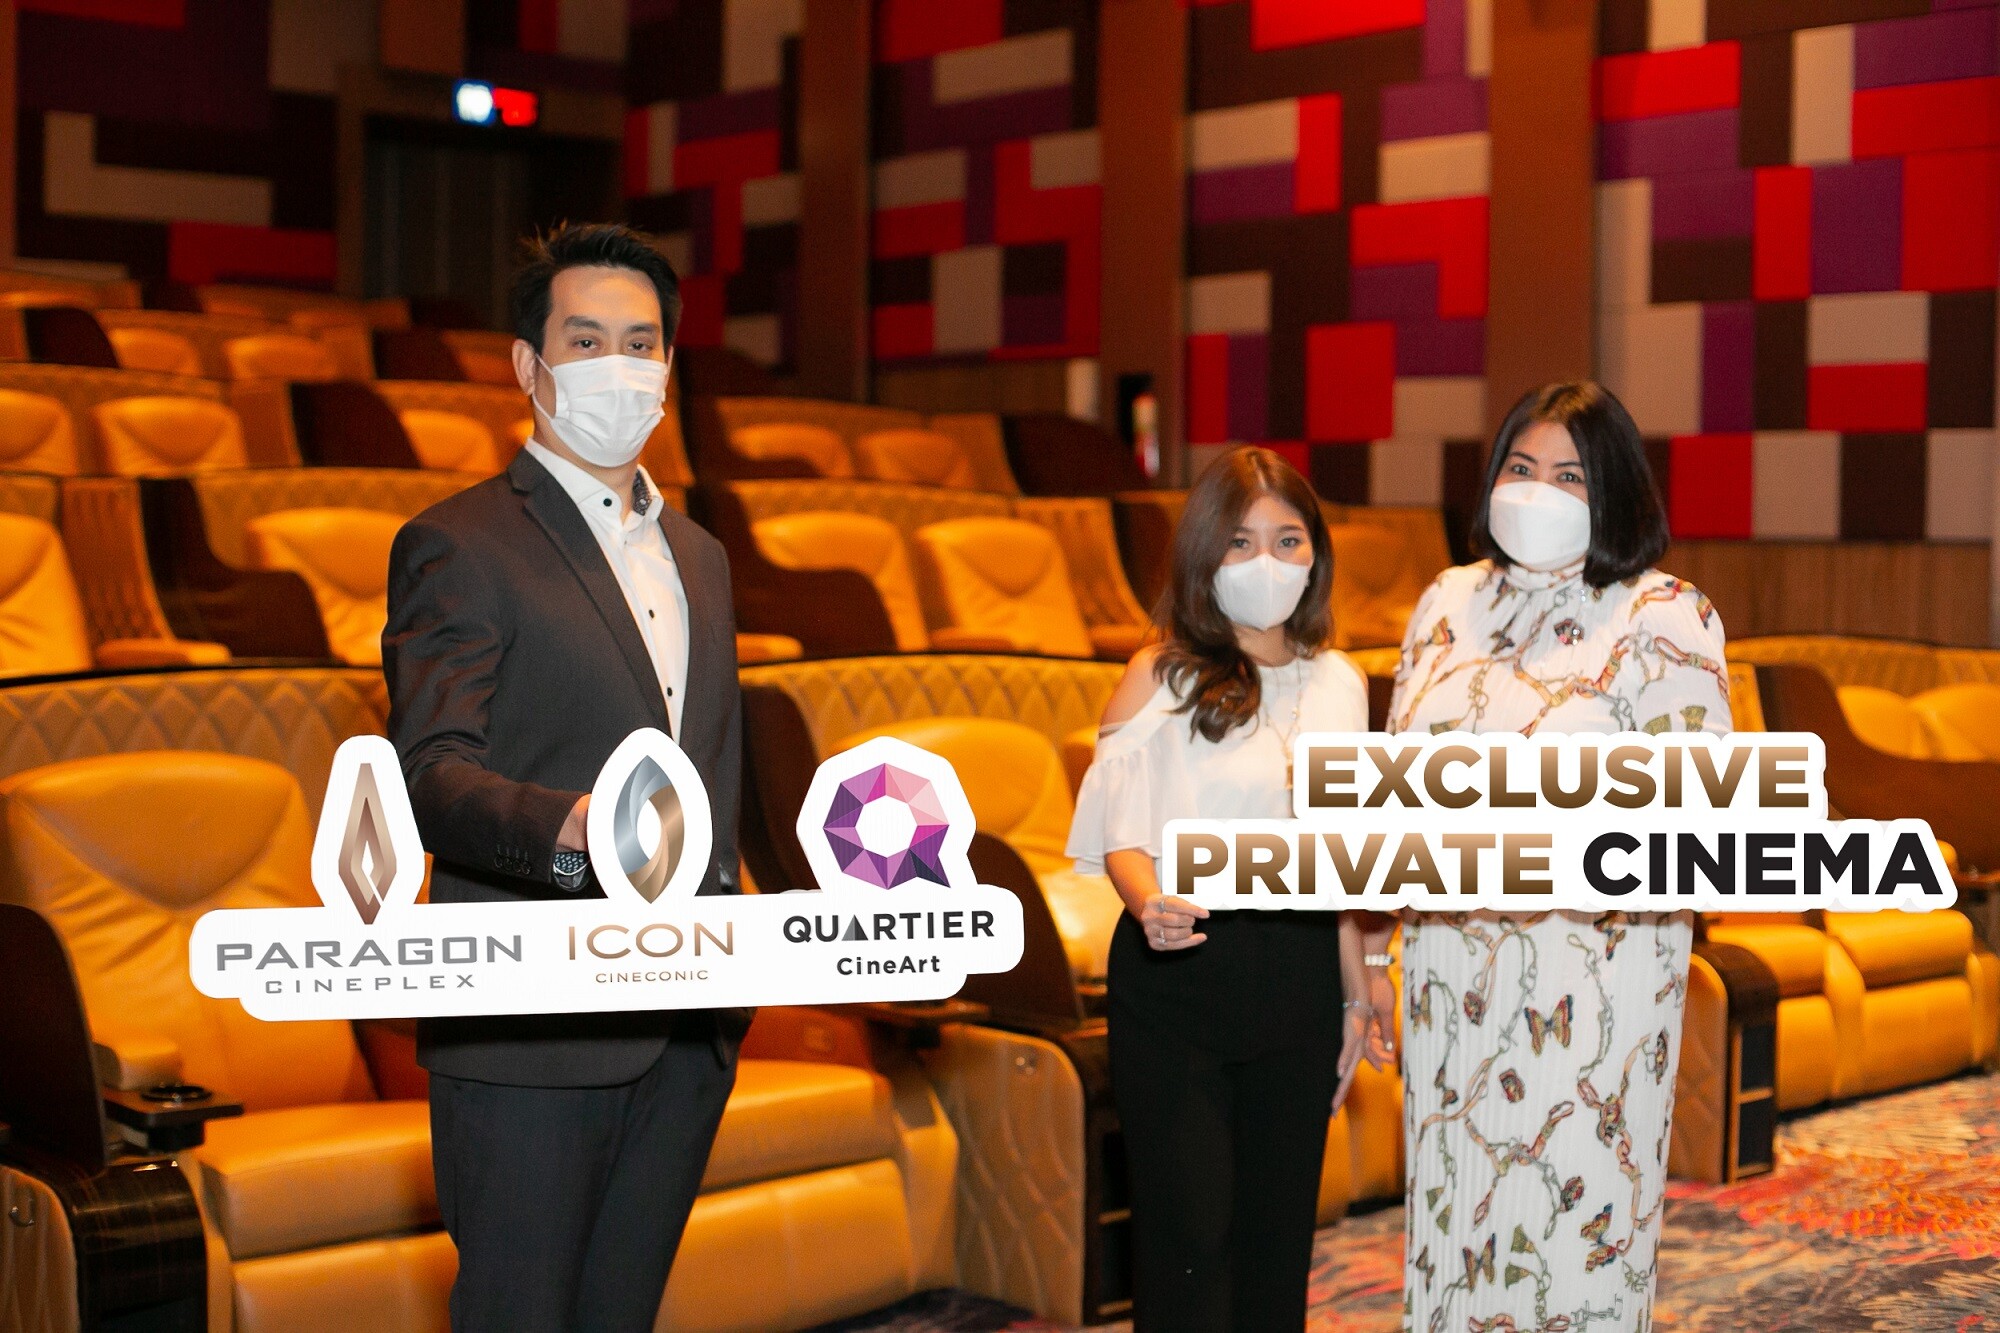 เมเจอร์ ซีนีเพล็กซ์ กรุ้ป ชวนมาสัมผัสสุดยอดประสบการณ์กับ "Exclusive Private Cinema" เหมารอบชมภาพยนตร์ในราคาพิเศษที่คุณสัมผัสได้